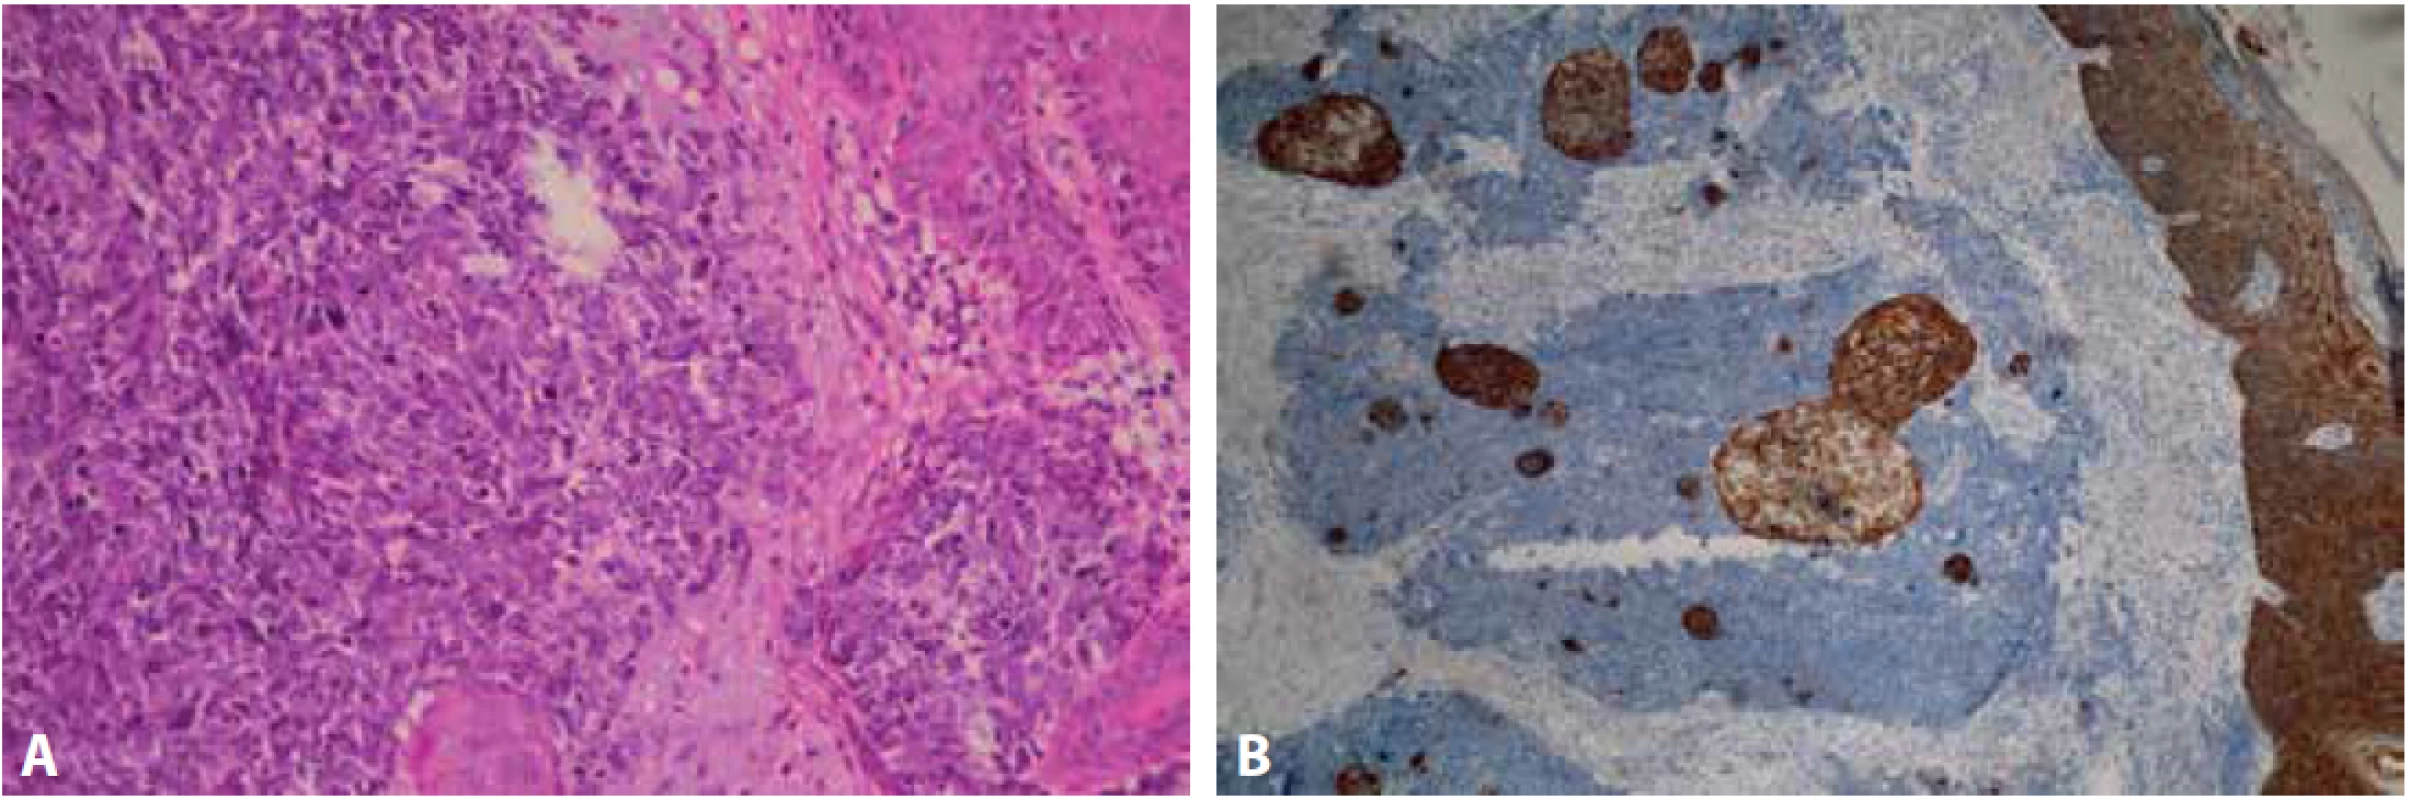 Mikroskopický obraz primárního tumoru s četnějšími skvamózními partiemi (A – barvení hematoxylin eozin, zvětšení 100x). Silná cytoplazmatická exprese AE1/AE3 v epidermis a skvamózních partiích (B – zvětšení 100x).